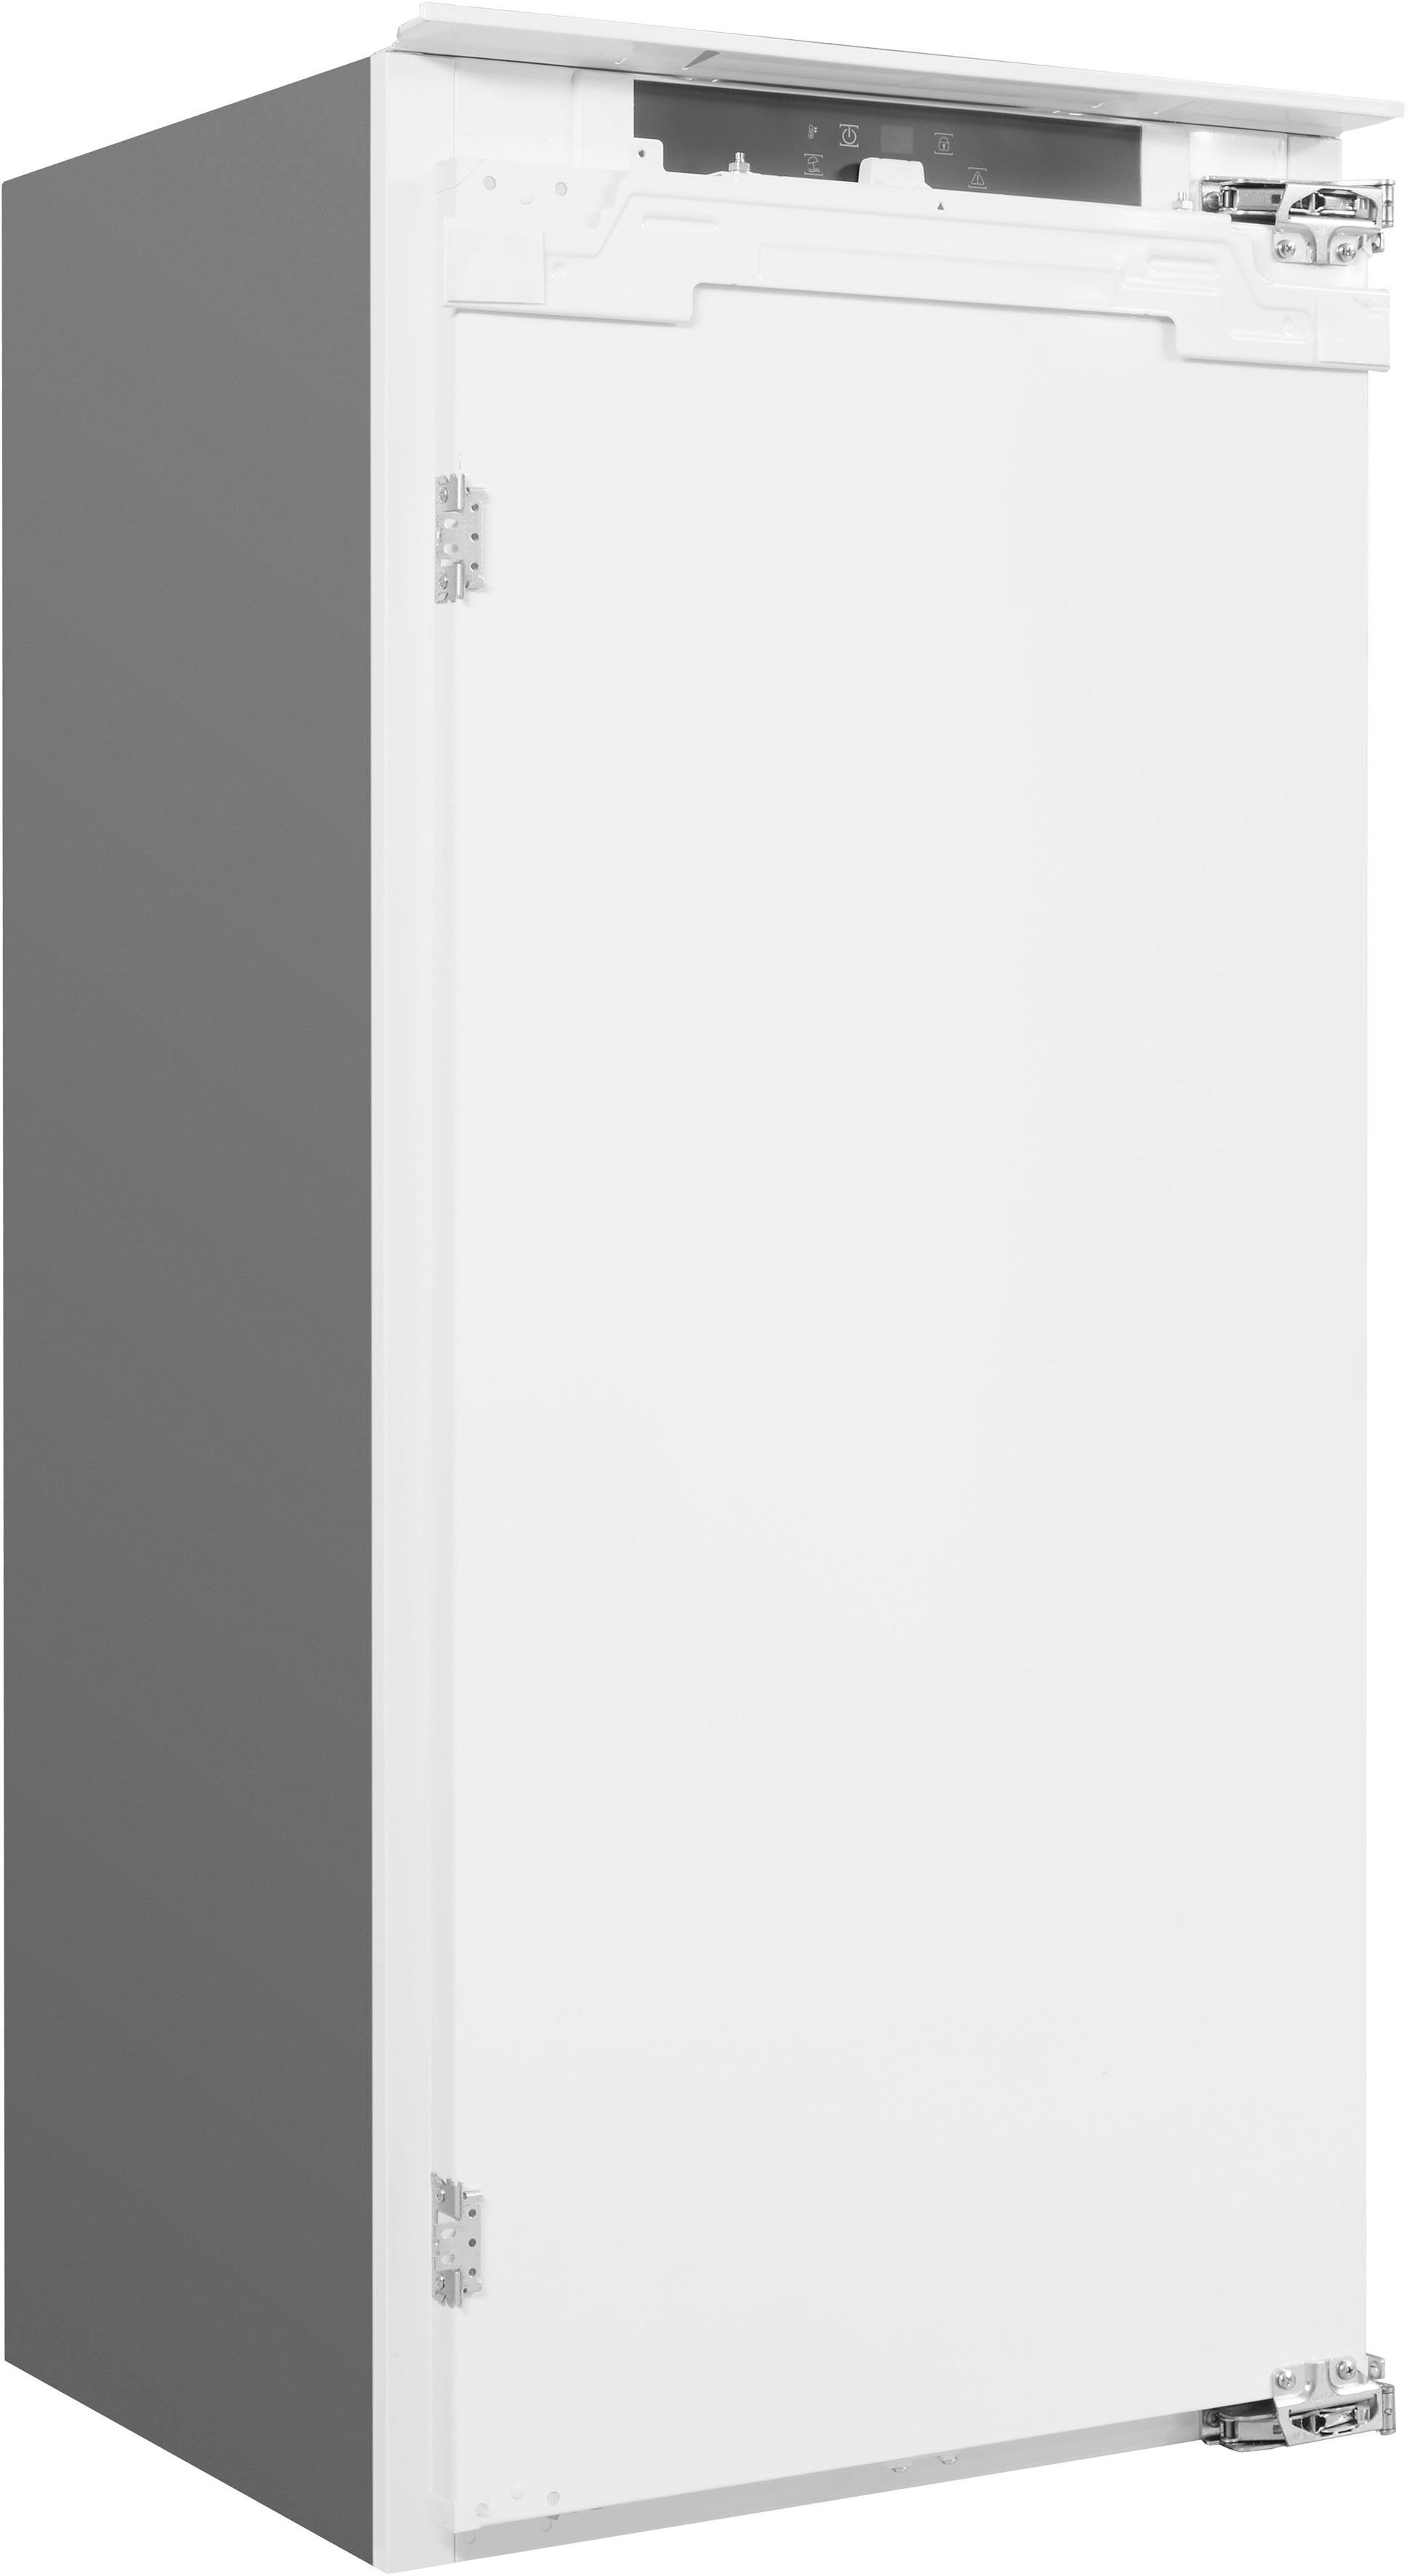 BAUKNECHT Einbaukühlschrank KSI 12VF3, 122 cm hoch, cm 55,7 breit